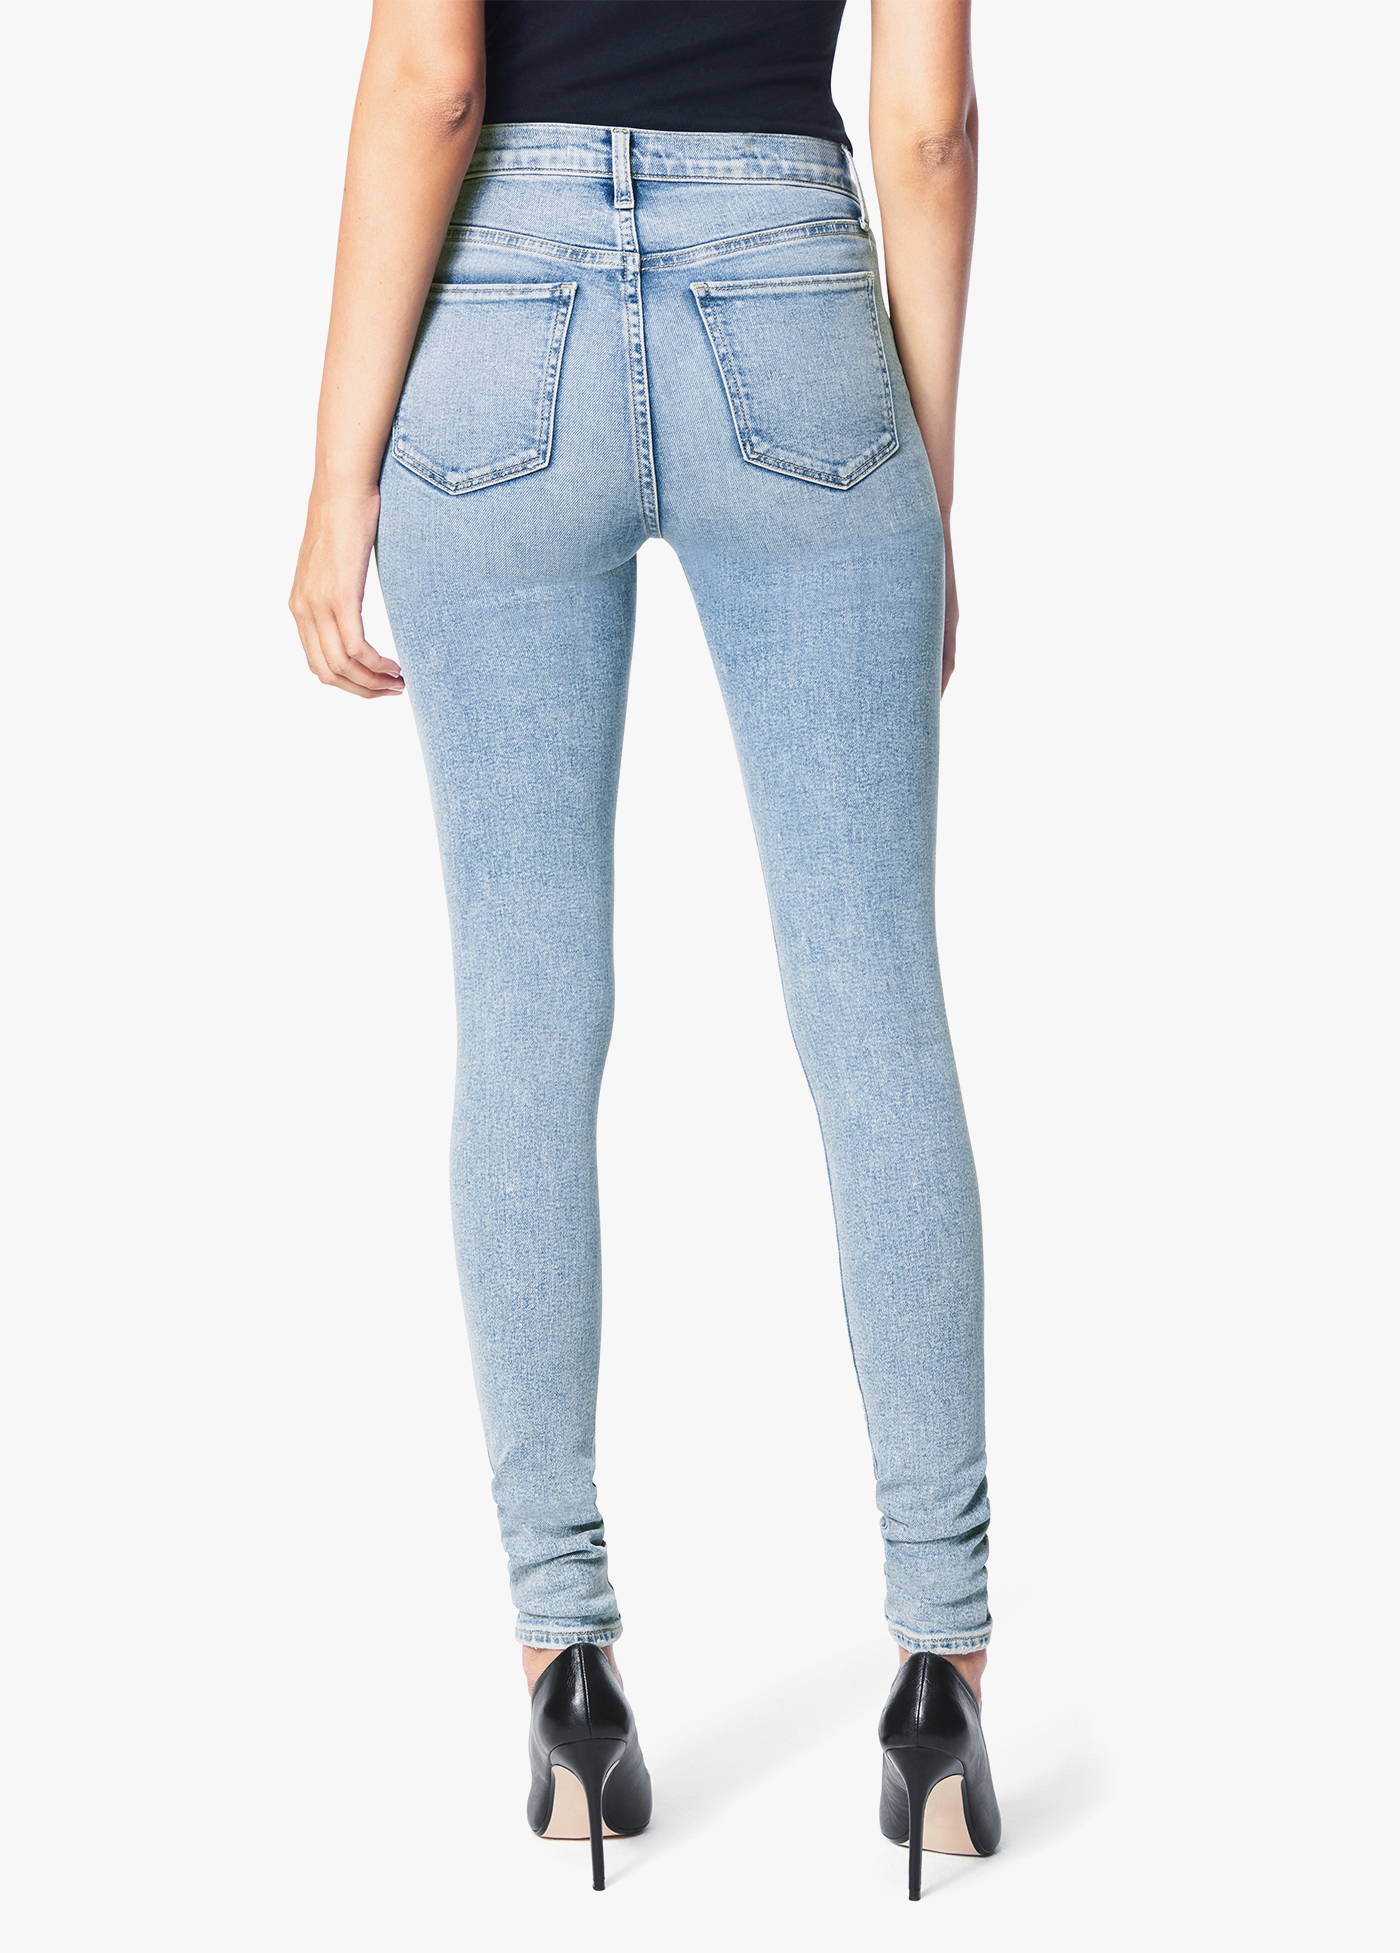 Women's Skinny Jean 